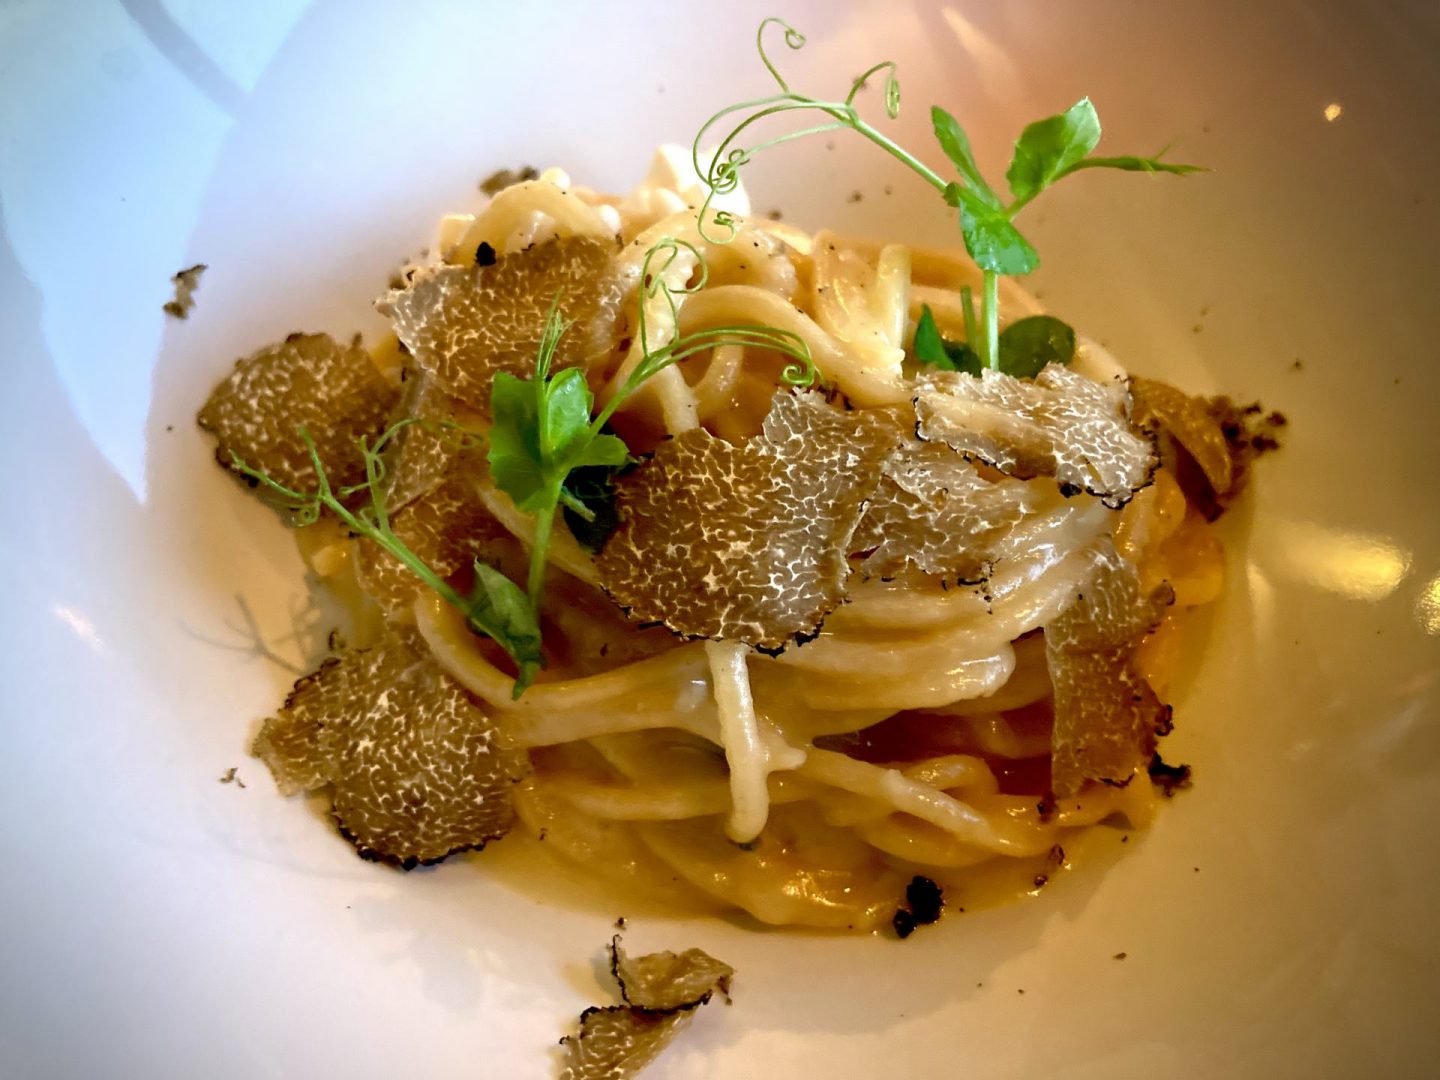 Erfahrung Bewertung Kritik Stochas Steinhaus Ahrntal Spaghetti mit Trüffel Foodblog Sternestulle